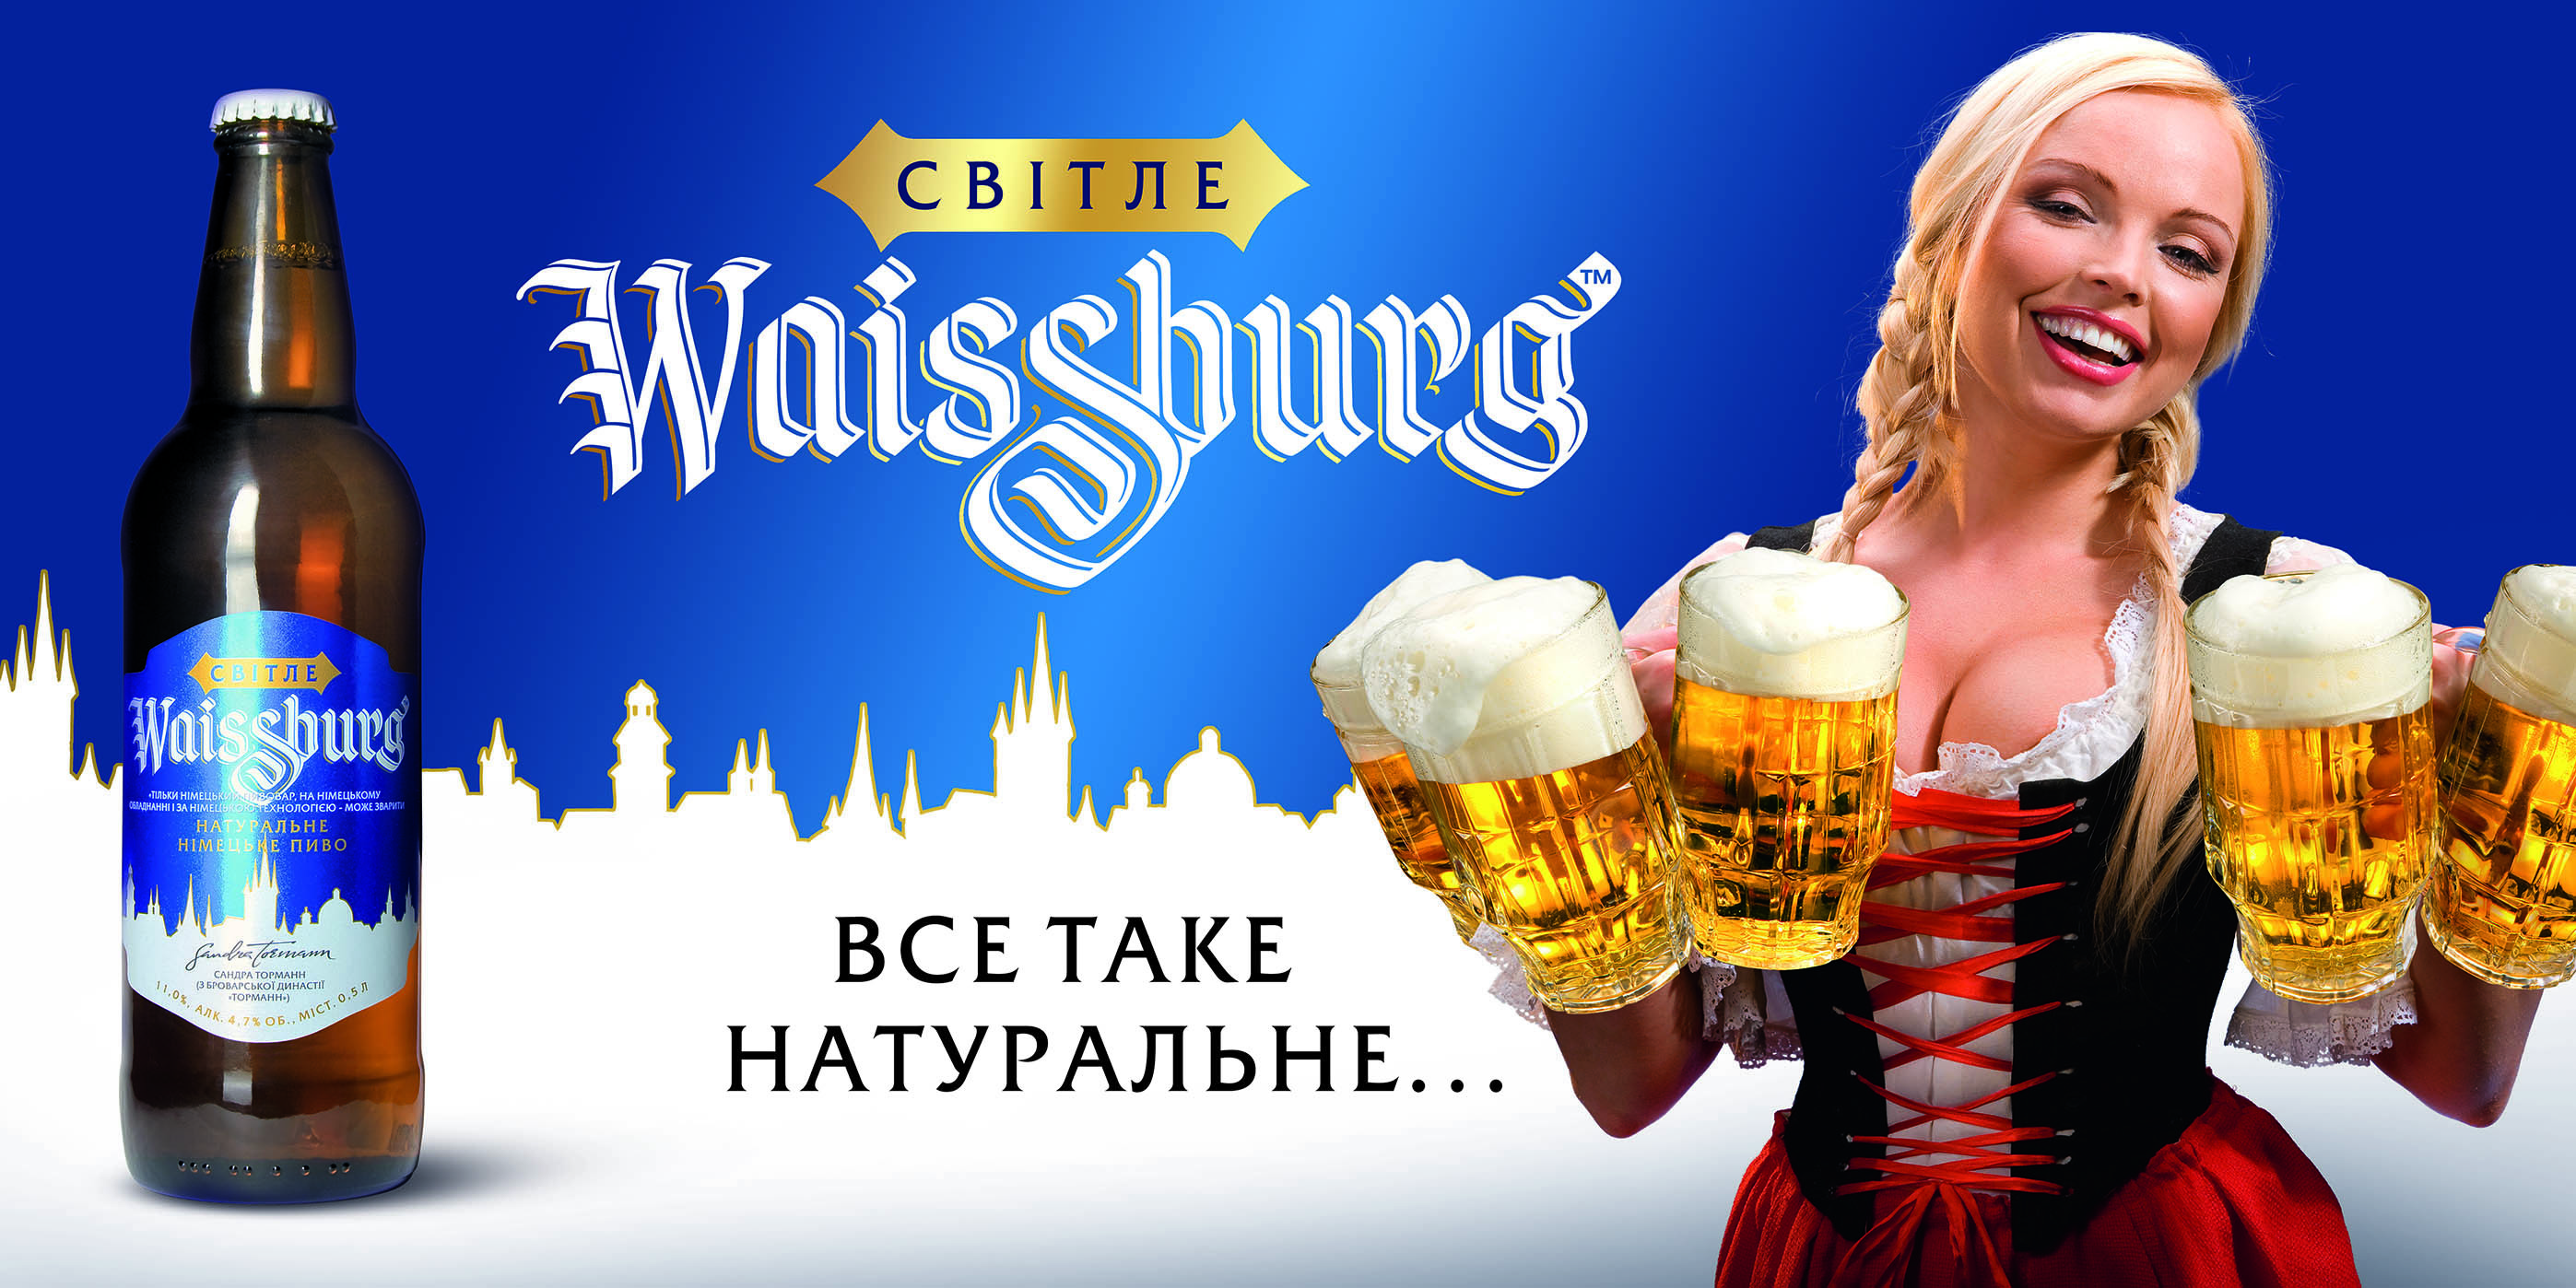 Реклама немецкого пива